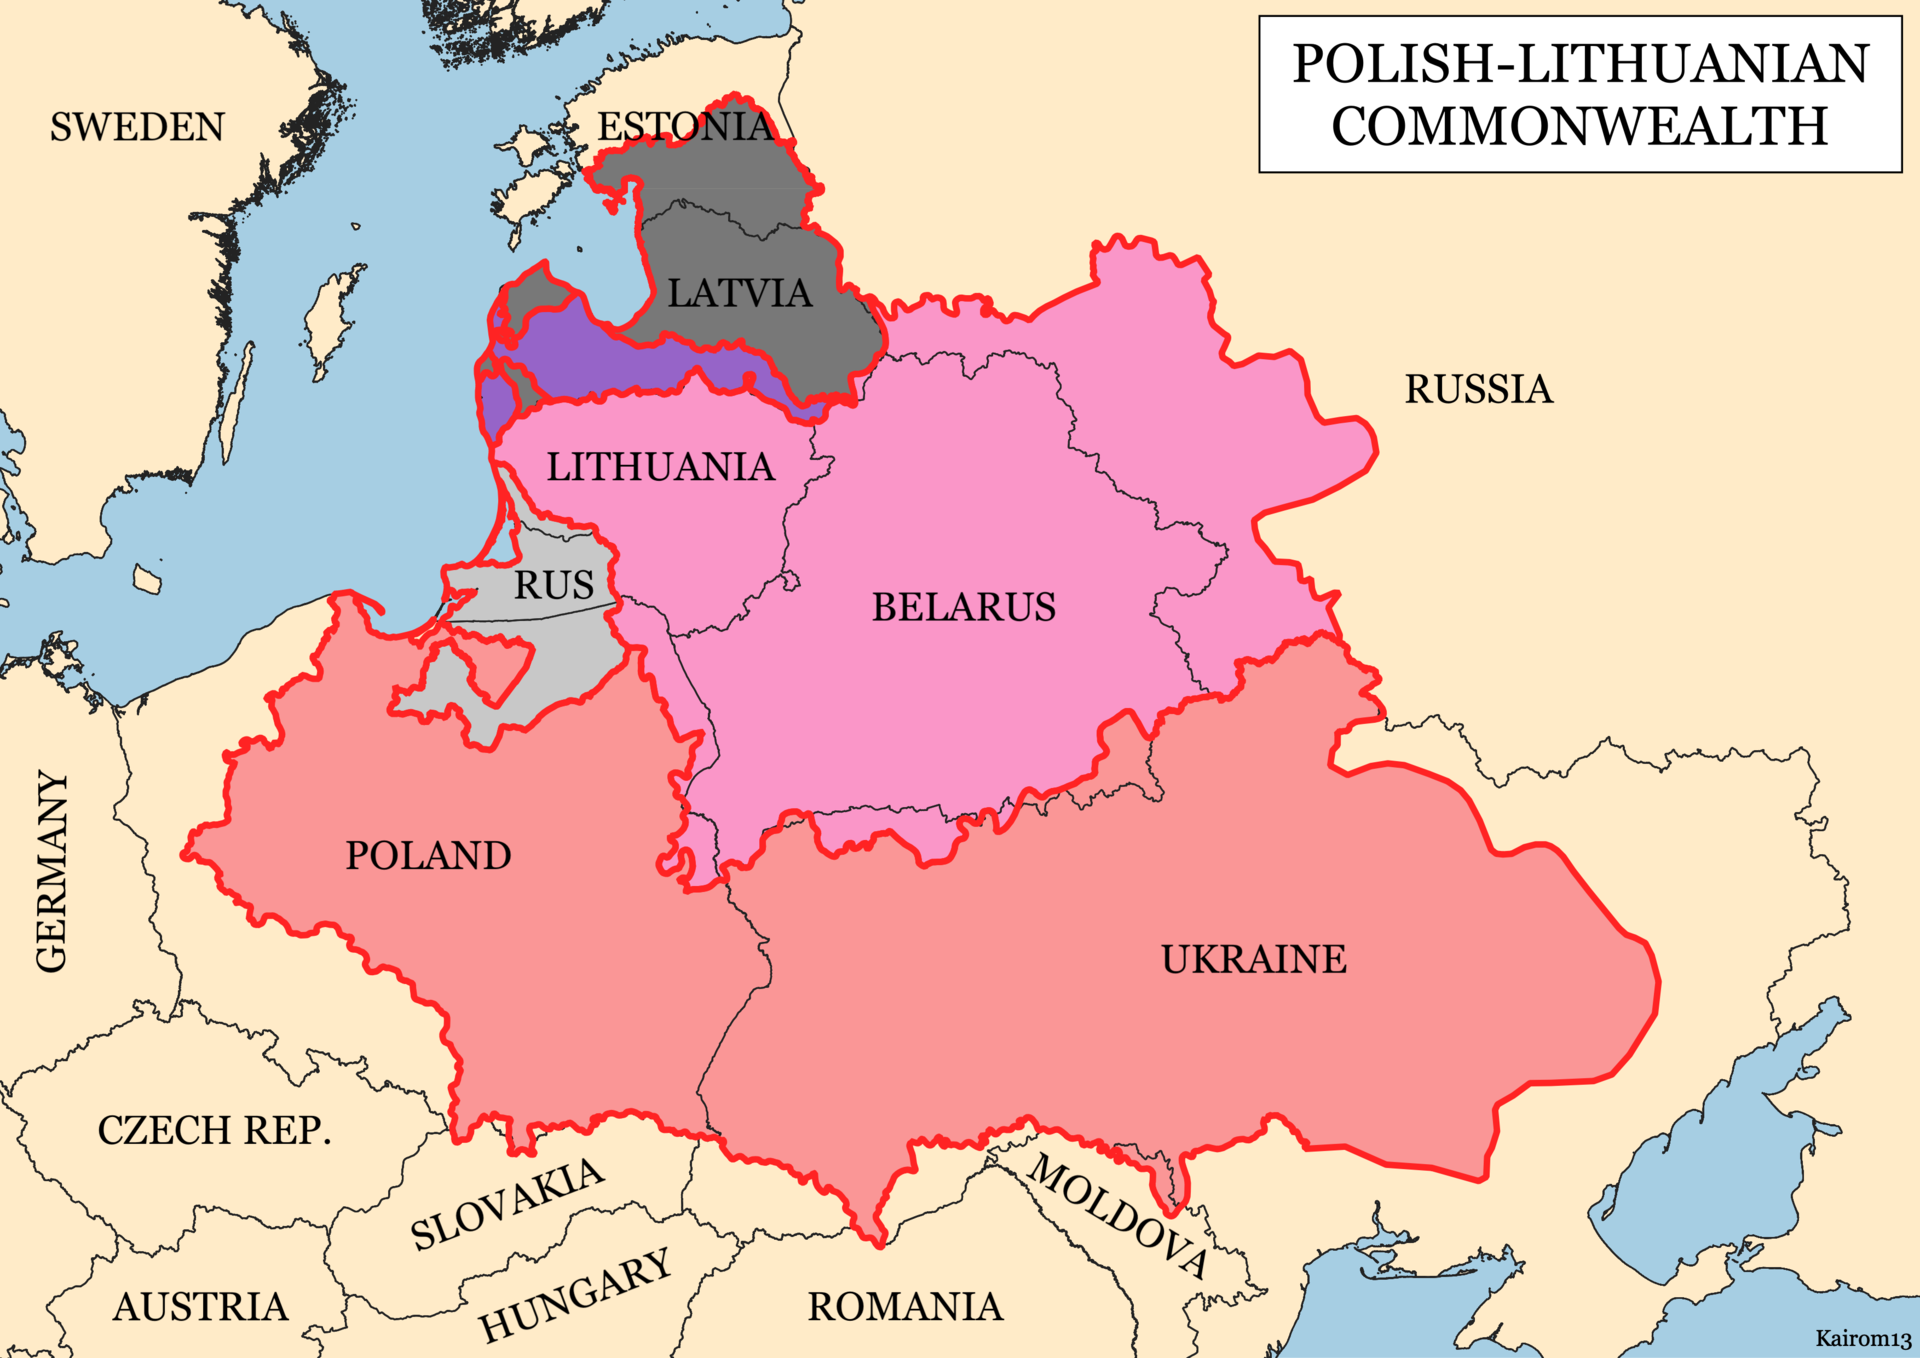 Bản đồ Khối Thịnh vượng chung Ba Lan - Lithuania vào năm 1619, vùng màu đỏ là vương quốc Ba Lan trong khối (bao gồm phần lớn lãnh thổ Ukraine).